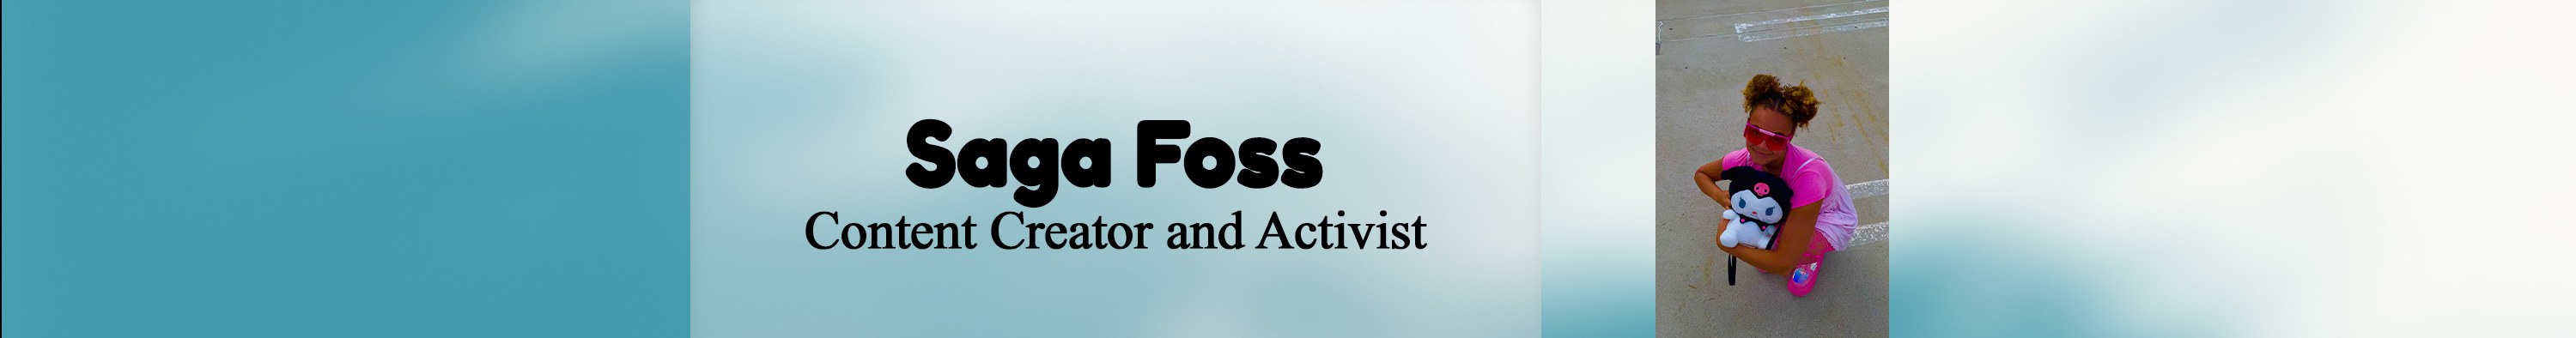 Saga Foss's profile banner